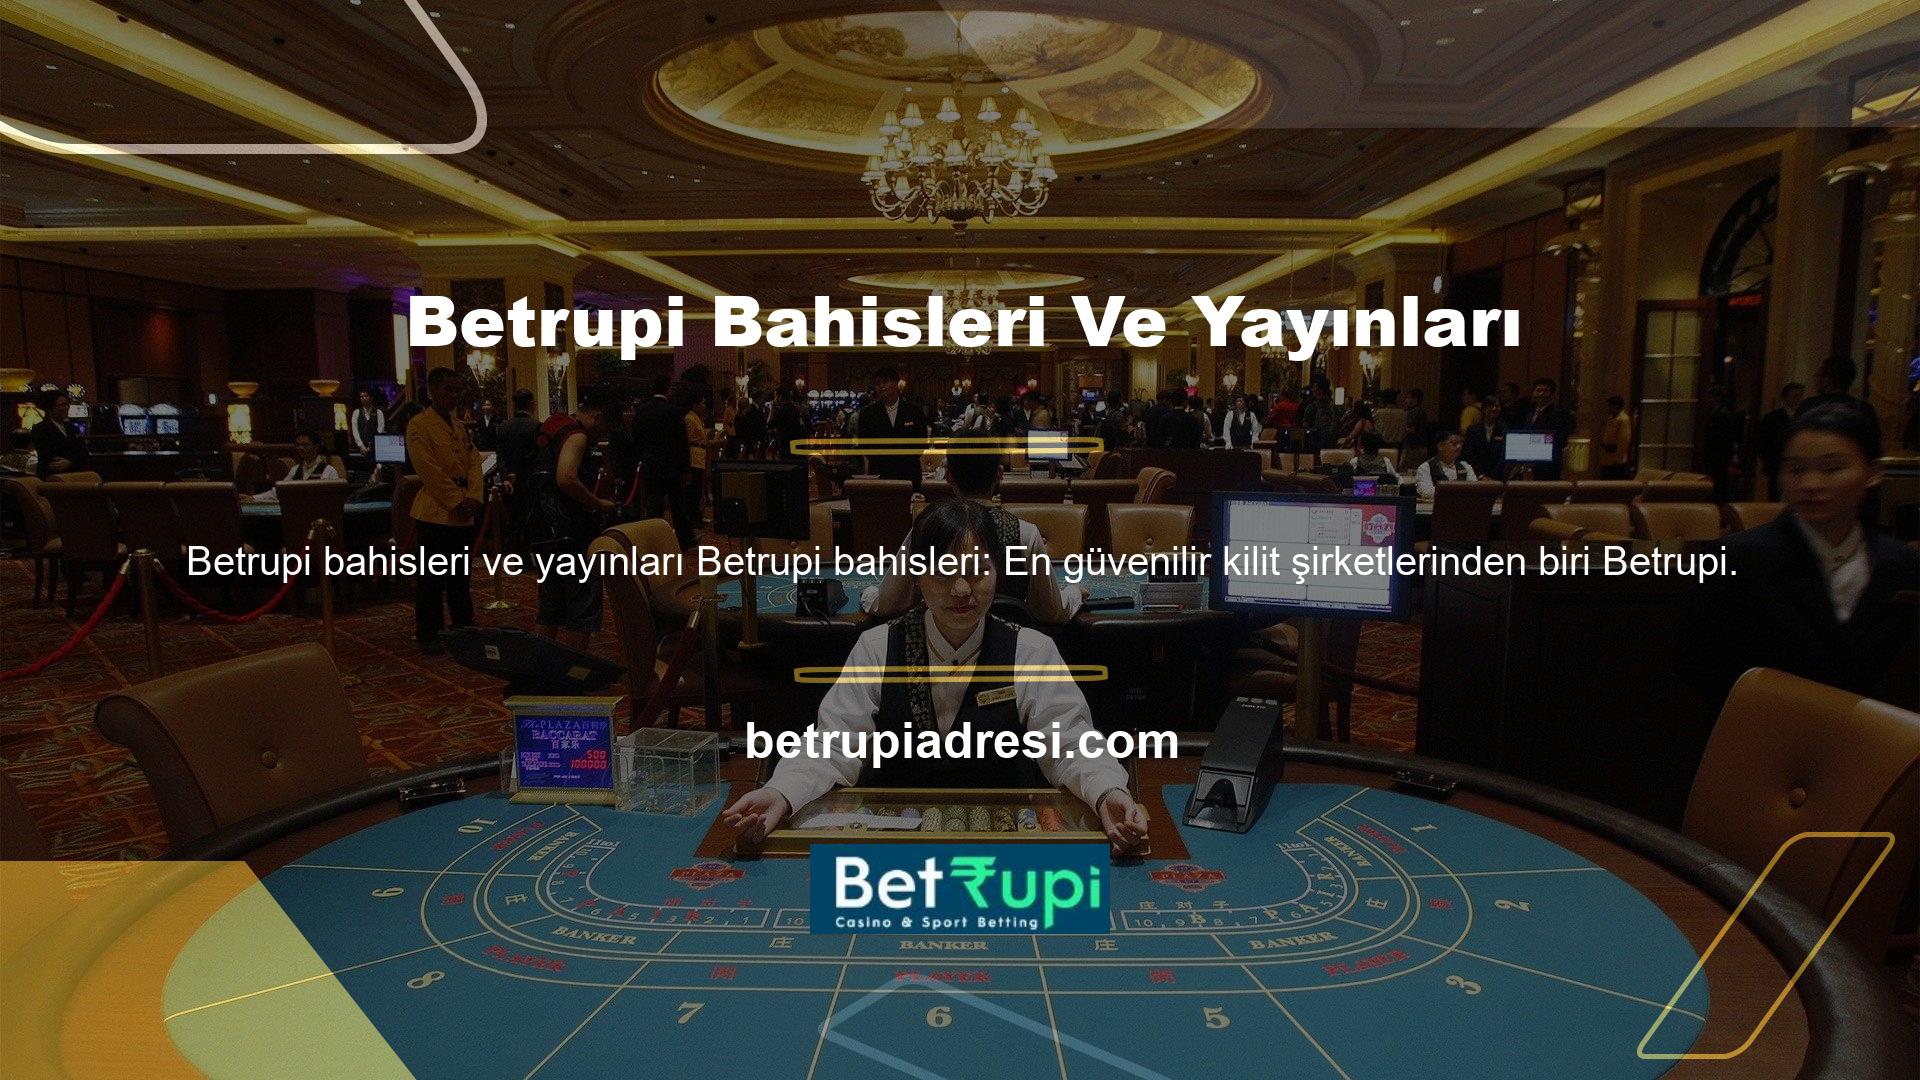 ' Türk casino endüstrisinde, bahis şirketi olarak Betrupi tercih eden önemli sayıda oyuncu var